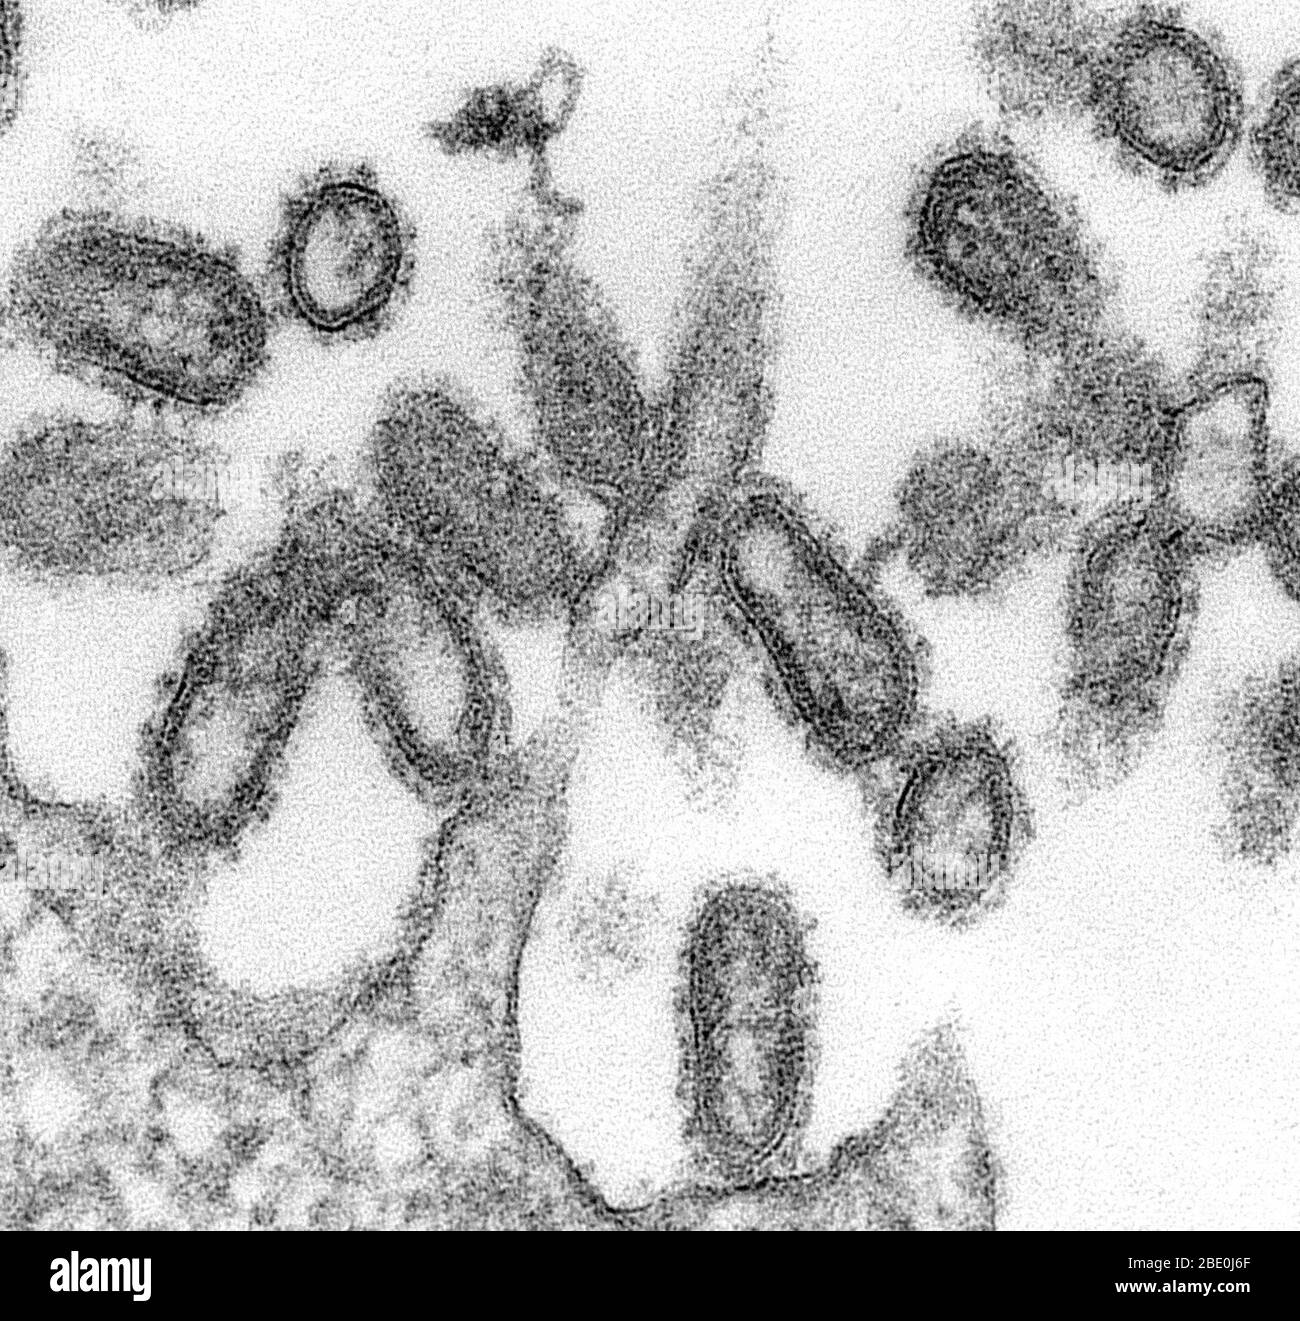 TEM di un campione ultrasottile ha rivelato alcune delle caratteristiche morfologiche ultrastrutturali osservate in 1918 virioni del virus dell'influenza. Le sporgenze superficiali prominenti sui virioni sono composte da glicoproteine di tipo emagglutinina o neuraminidasi. Composto da ciò che sembrava puntini o tubuli, era un involucro denso noto come capside, che circondava i costituenti di ogni virione di acido nucleico. L'influenza è una malattia respiratoria contagiosa causata dai virus dell'influenza. Può causare malattie da lievi a gravi e talvolta può portare a morte. Ingrandimento sconosciuto. Foto Stock